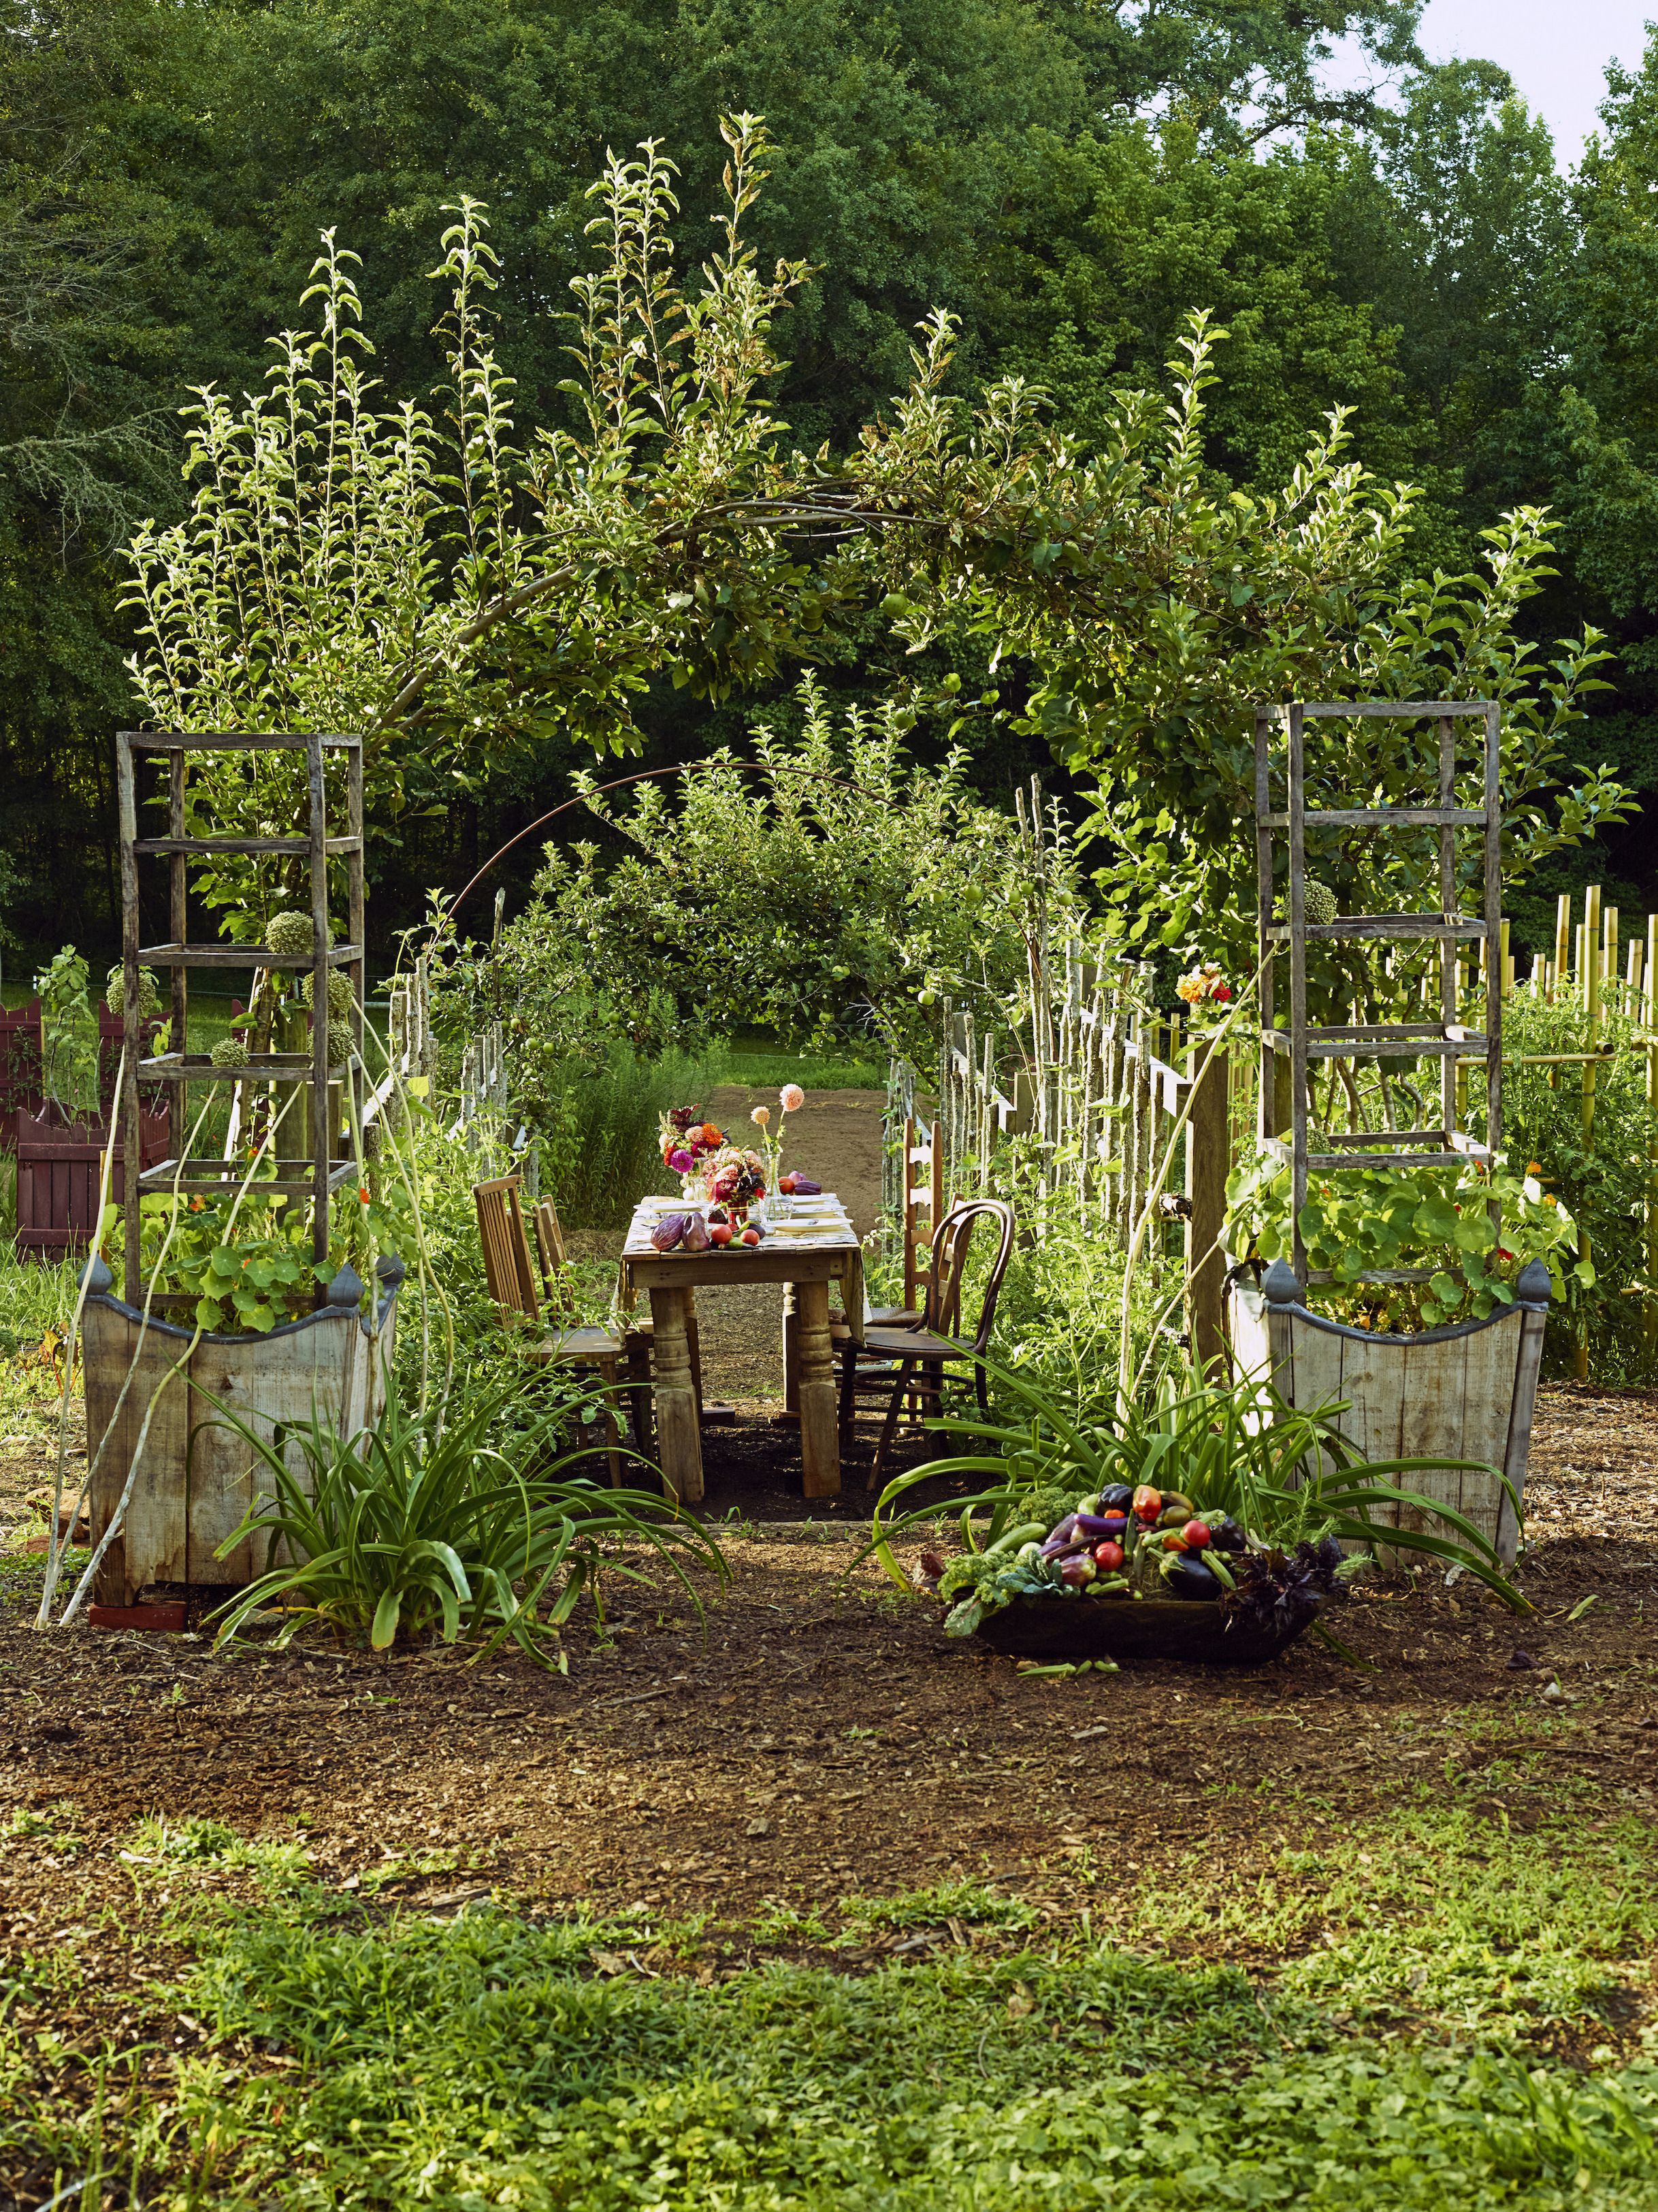 herb gardening ideas